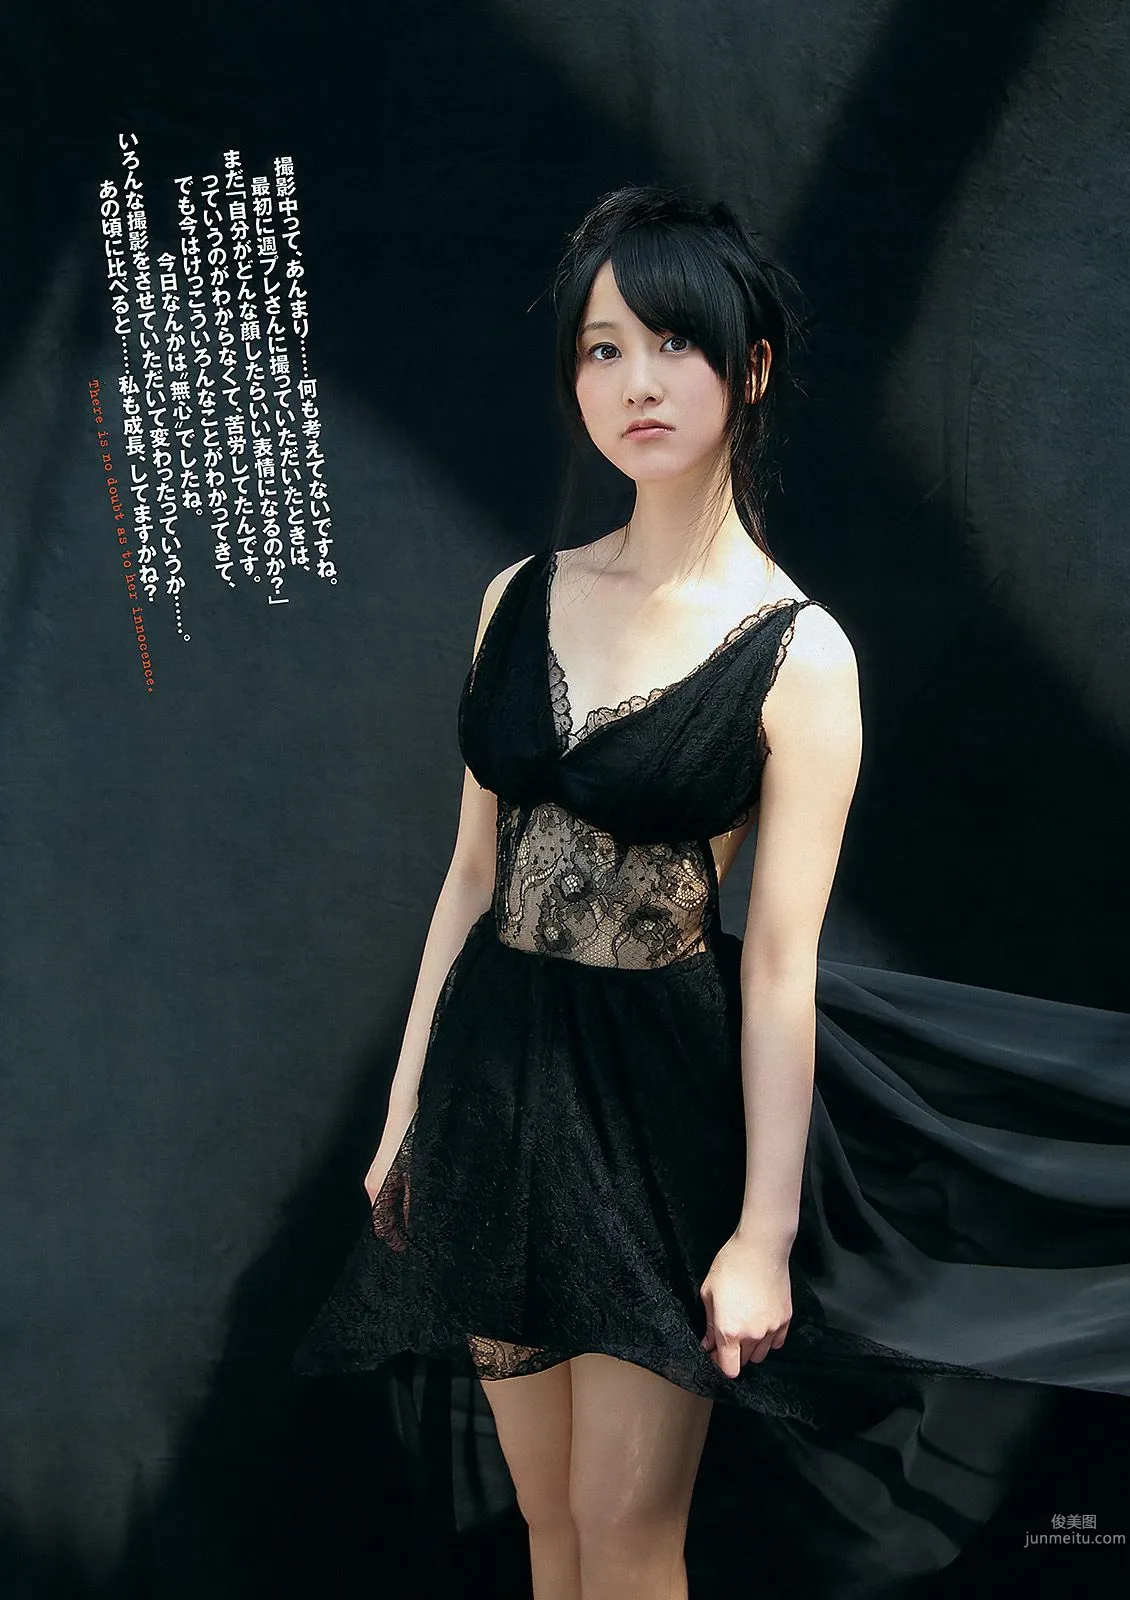 松井玲奈 大場美奈 丸高愛実 小原春香 AKB48 青木爱 香西咲 [Weekly Playboy] 2012年No.25 写真杂志5